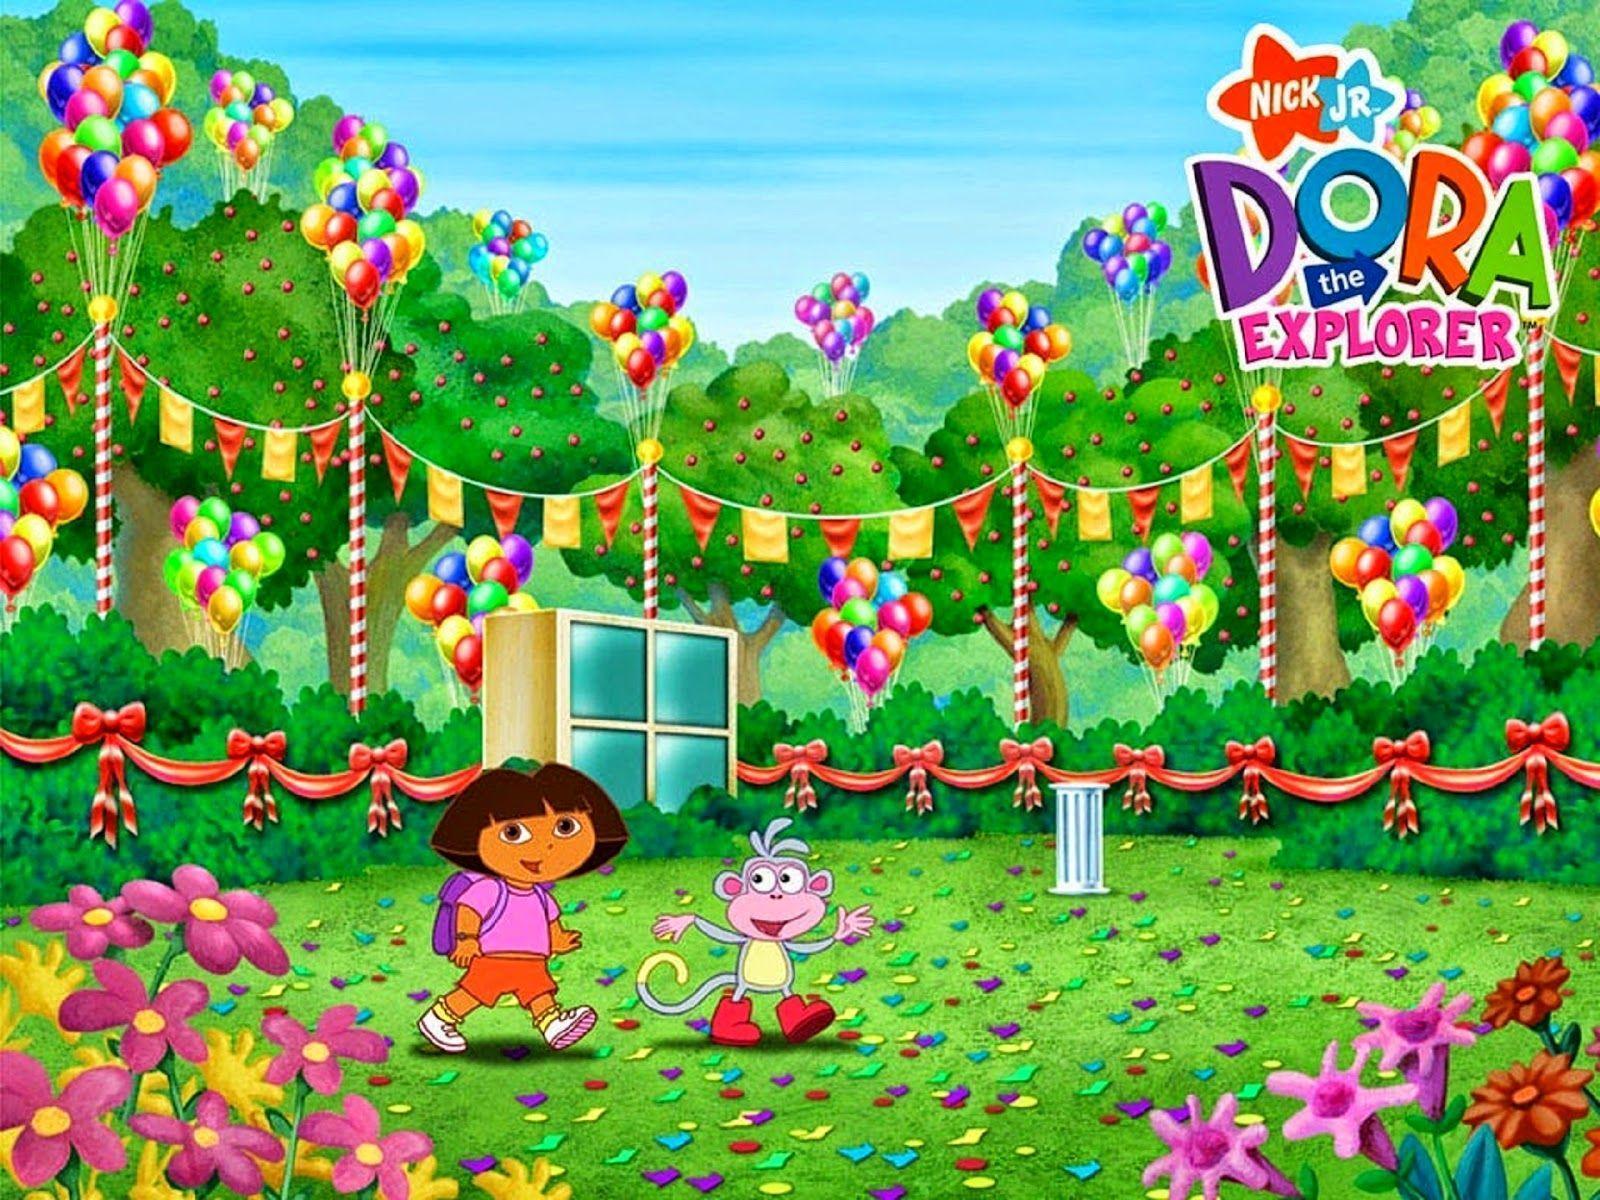 Dora Wallpaper HD